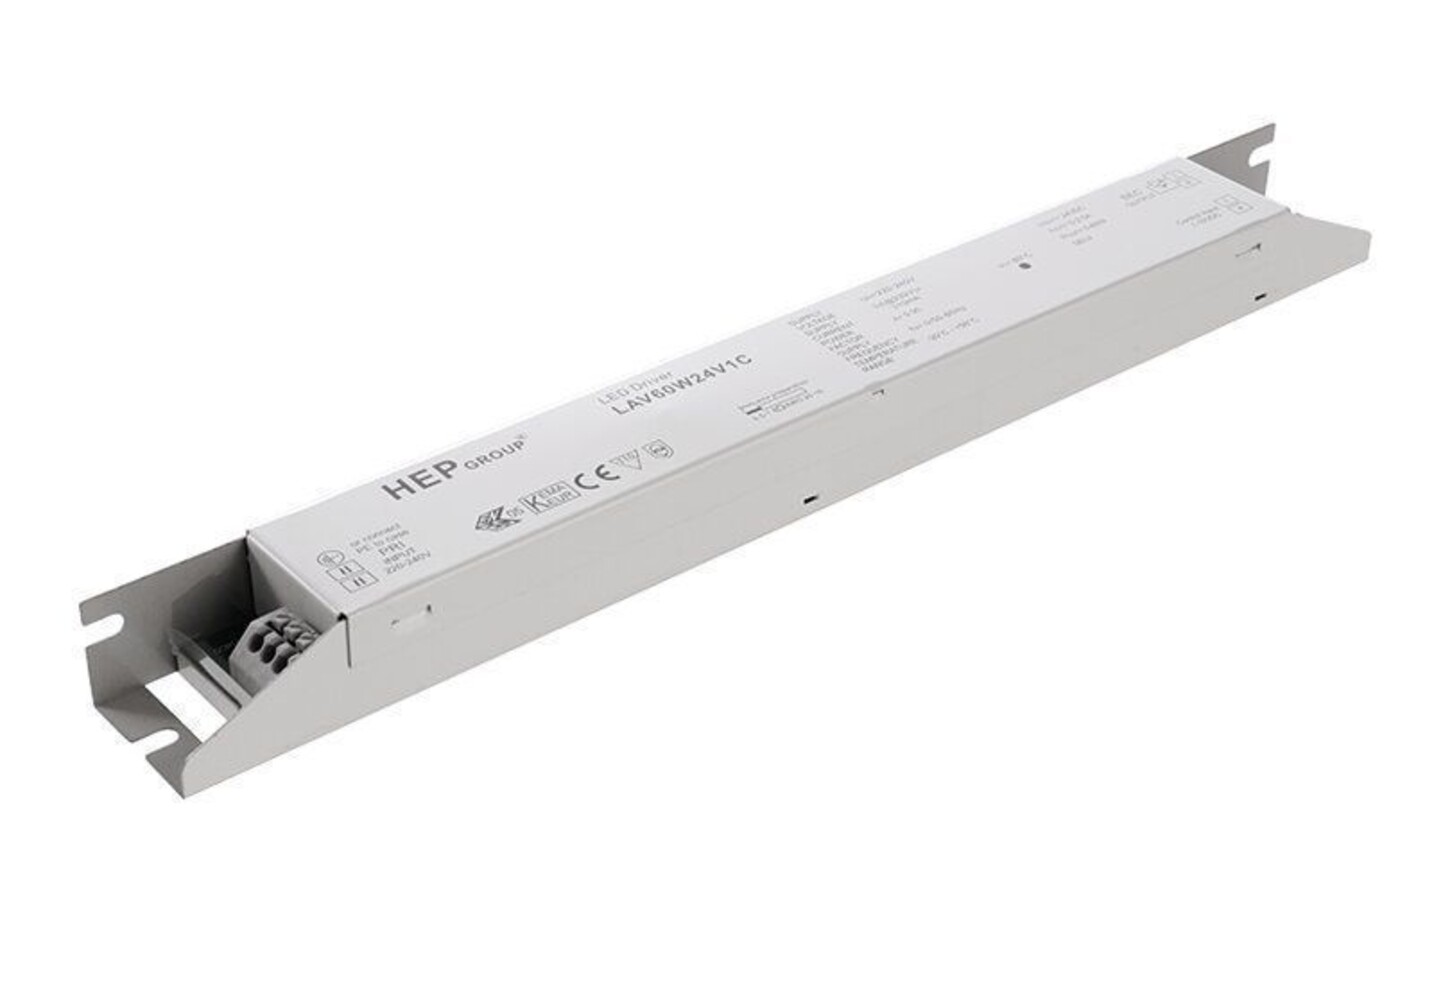 Hochwertiges, dimmbares LED Netzgerät der Marke HEP mit konstanter Spannung